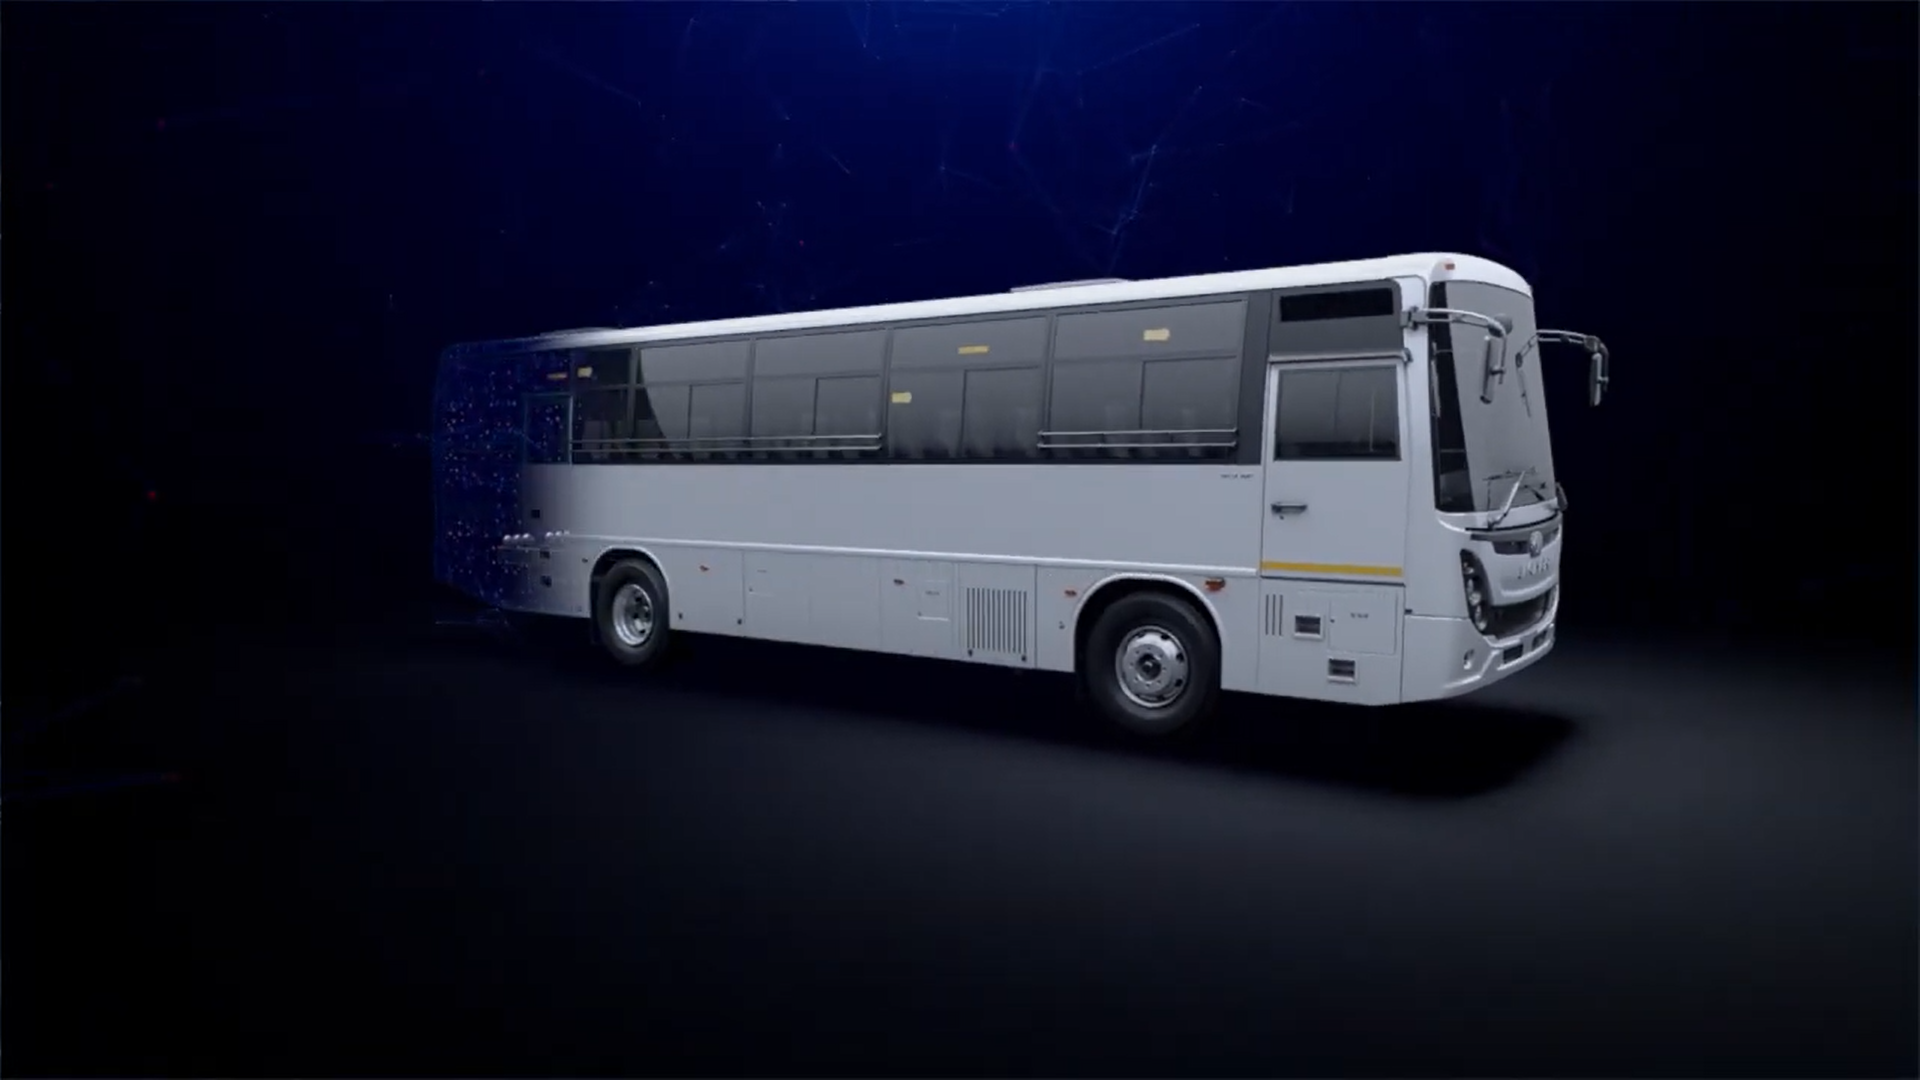 Know your Eicher BSVI Vehicle - Eicher 6016 HD Bus Range (Hindi)